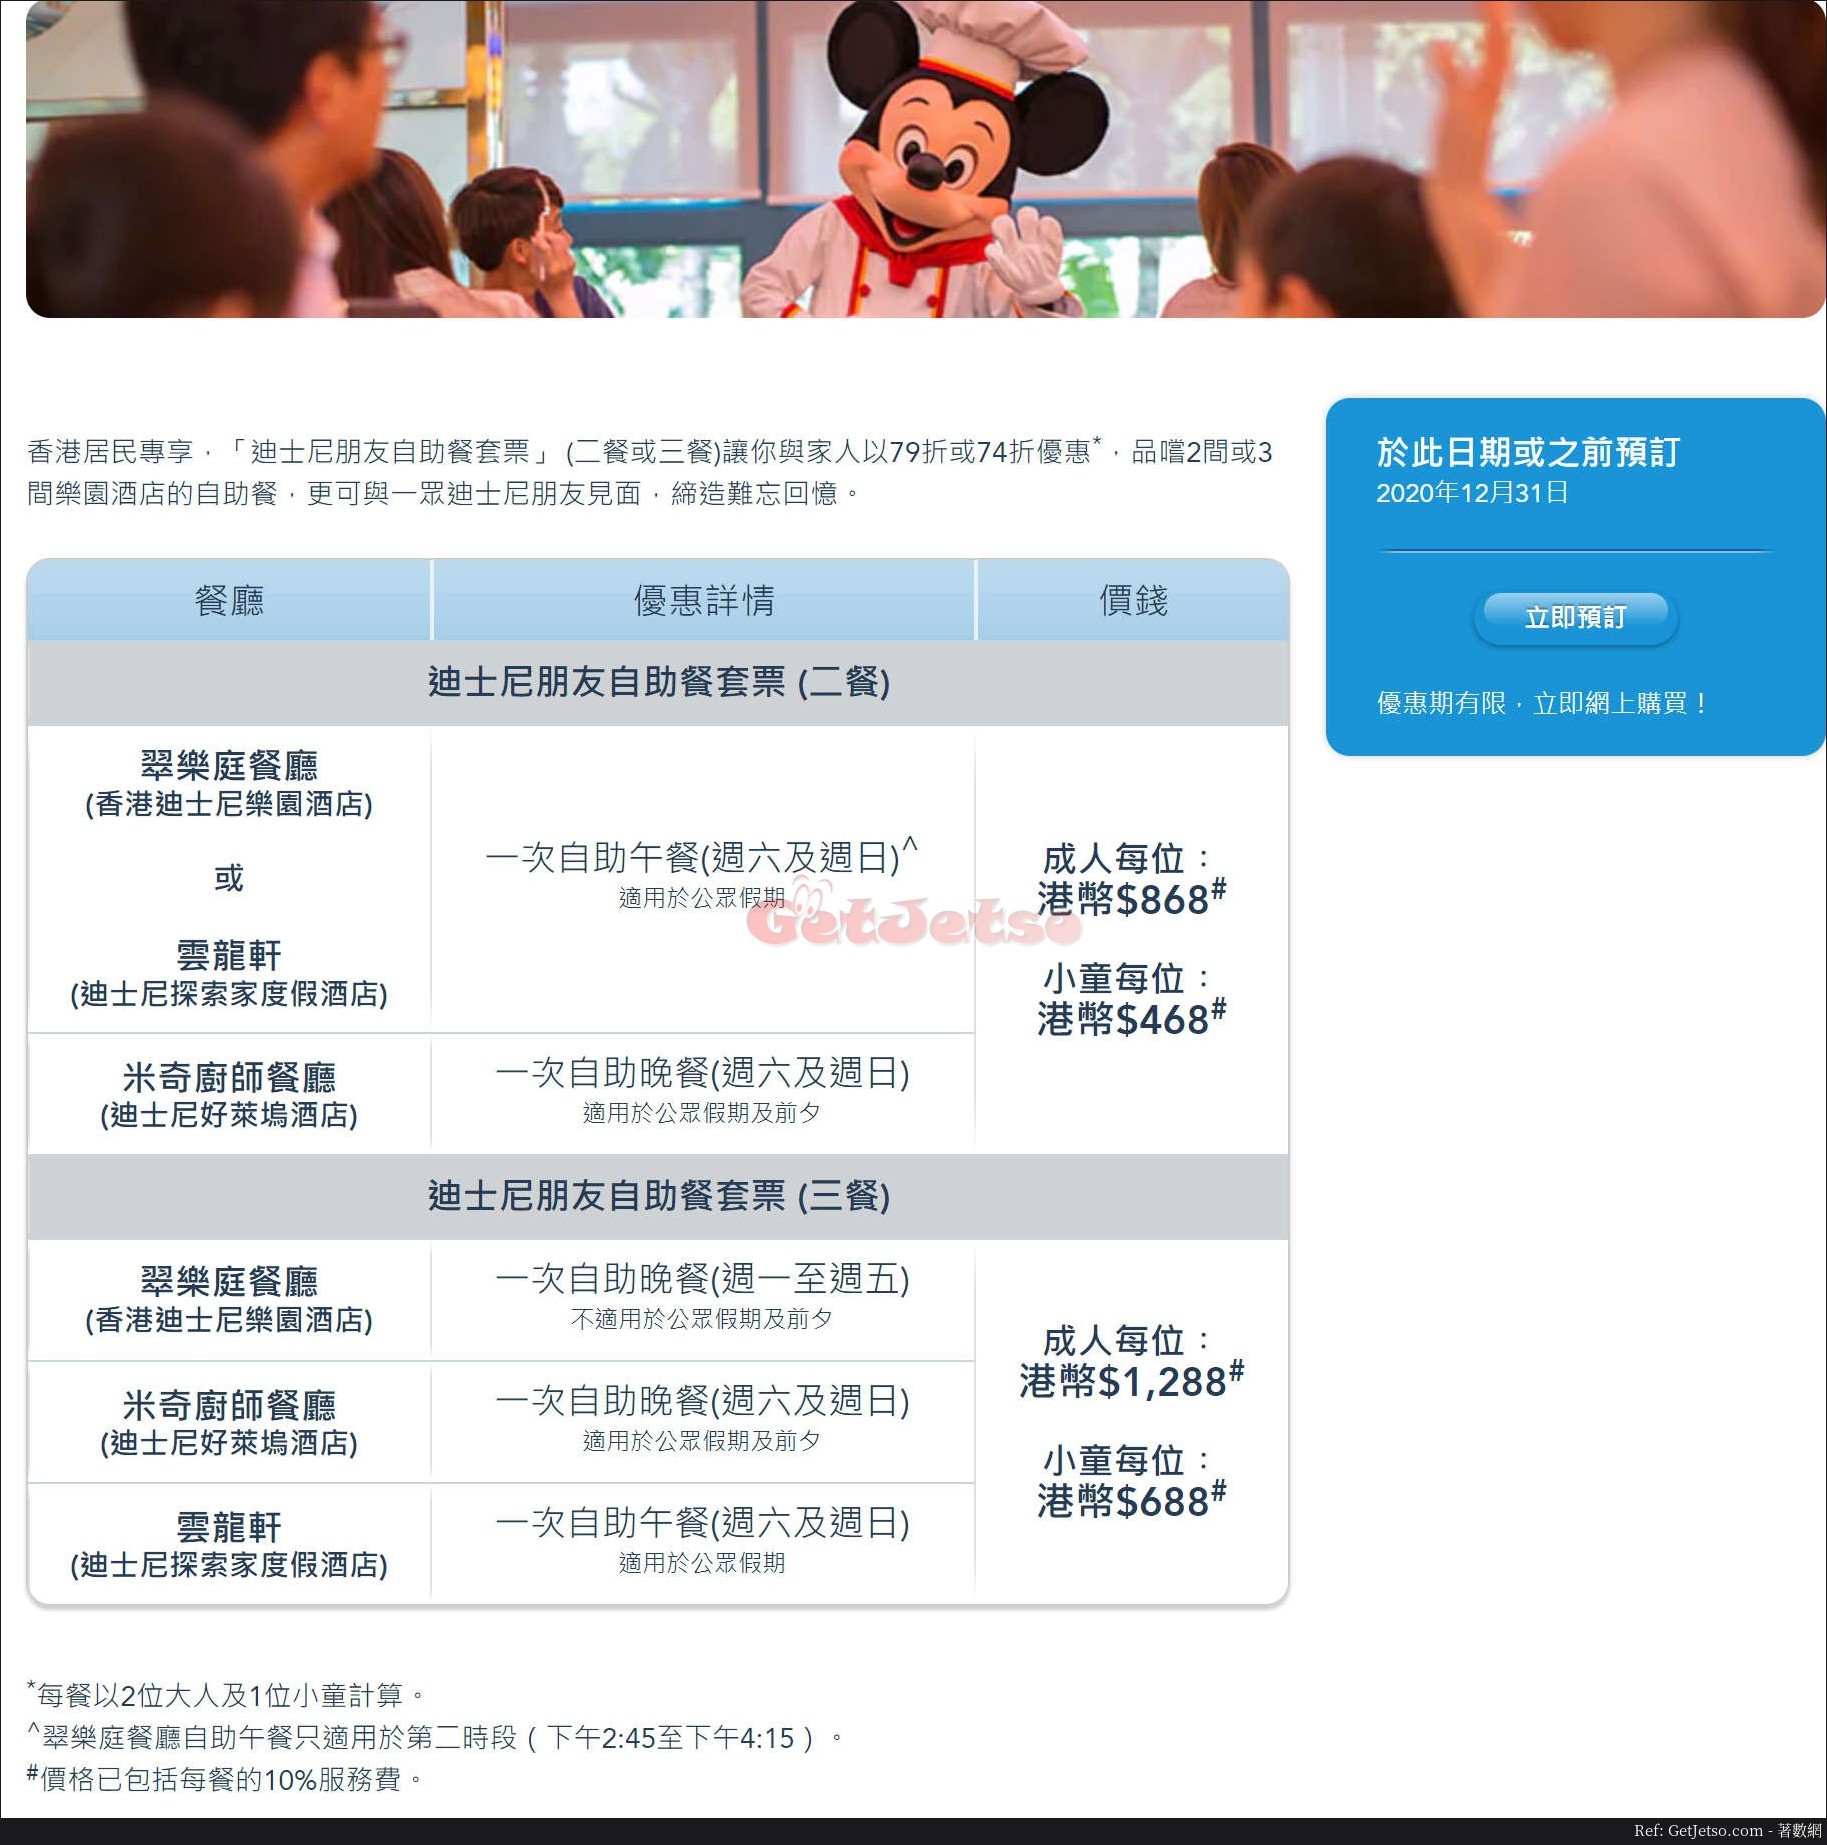 香港迪士尼樂園低至74折自助餐套票優惠(至20年12月31日)圖片1